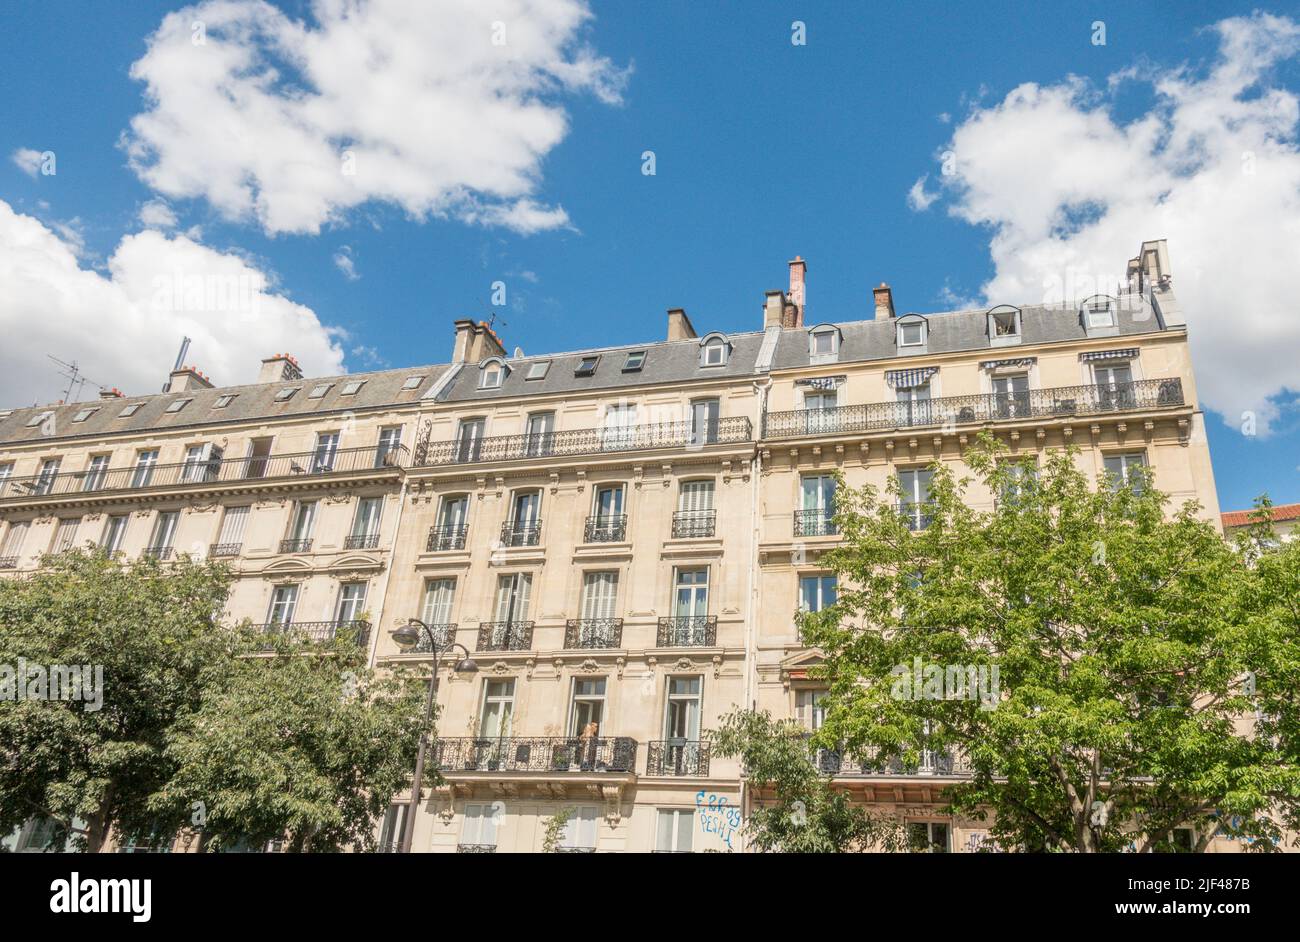 Vieux bâtiments parisiens, architecture haussmannienne. Paris France. Banque D'Images